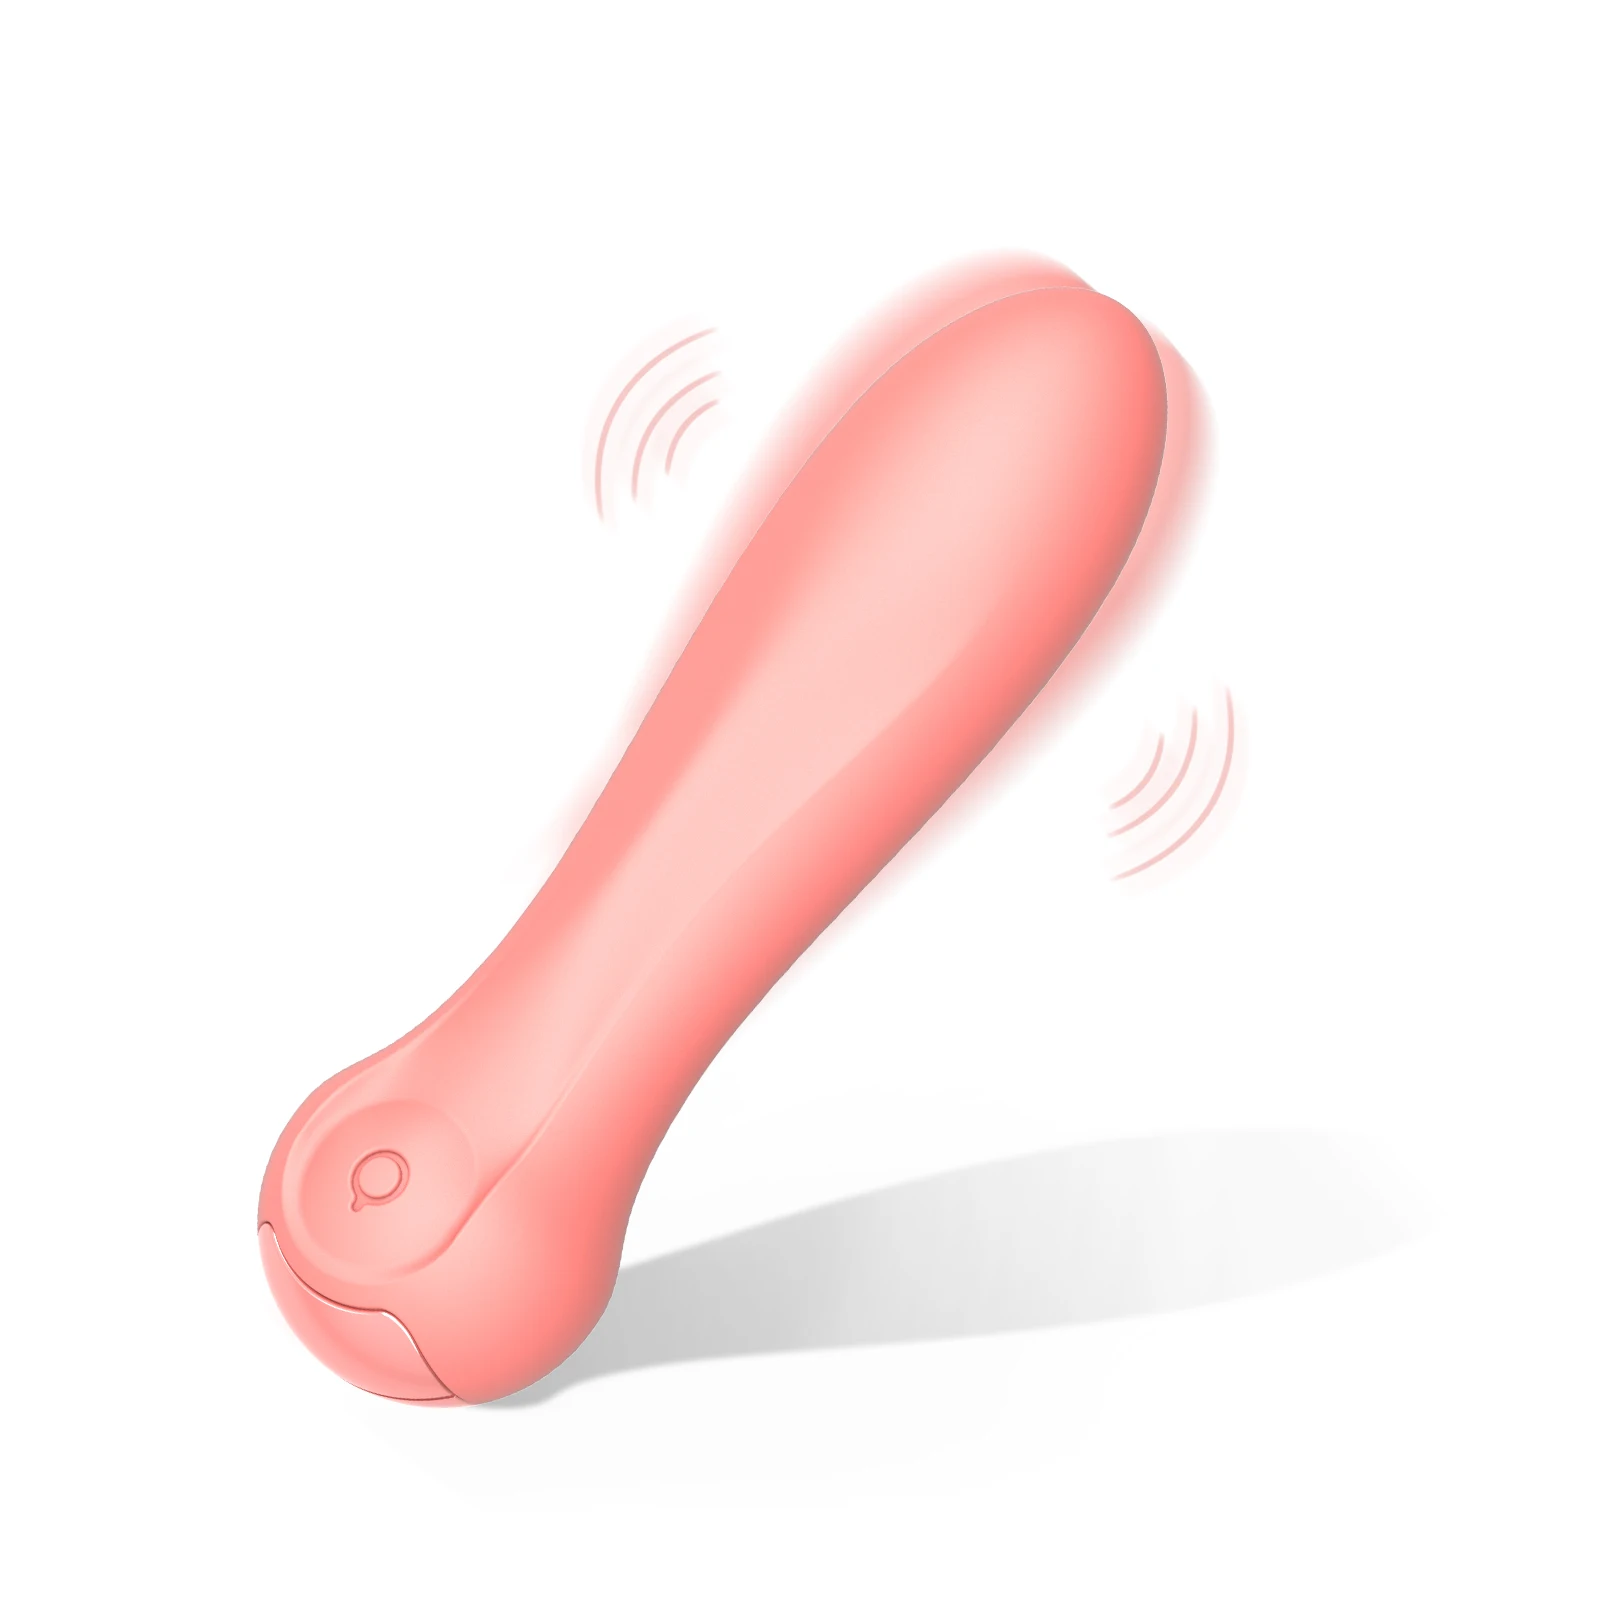 

10 Vibration Modes Vaginal Stimulation Adult Mini Sex Toys for Women Couple Bullet Vibrator G-Spot Clitoral Nipple Stimulator